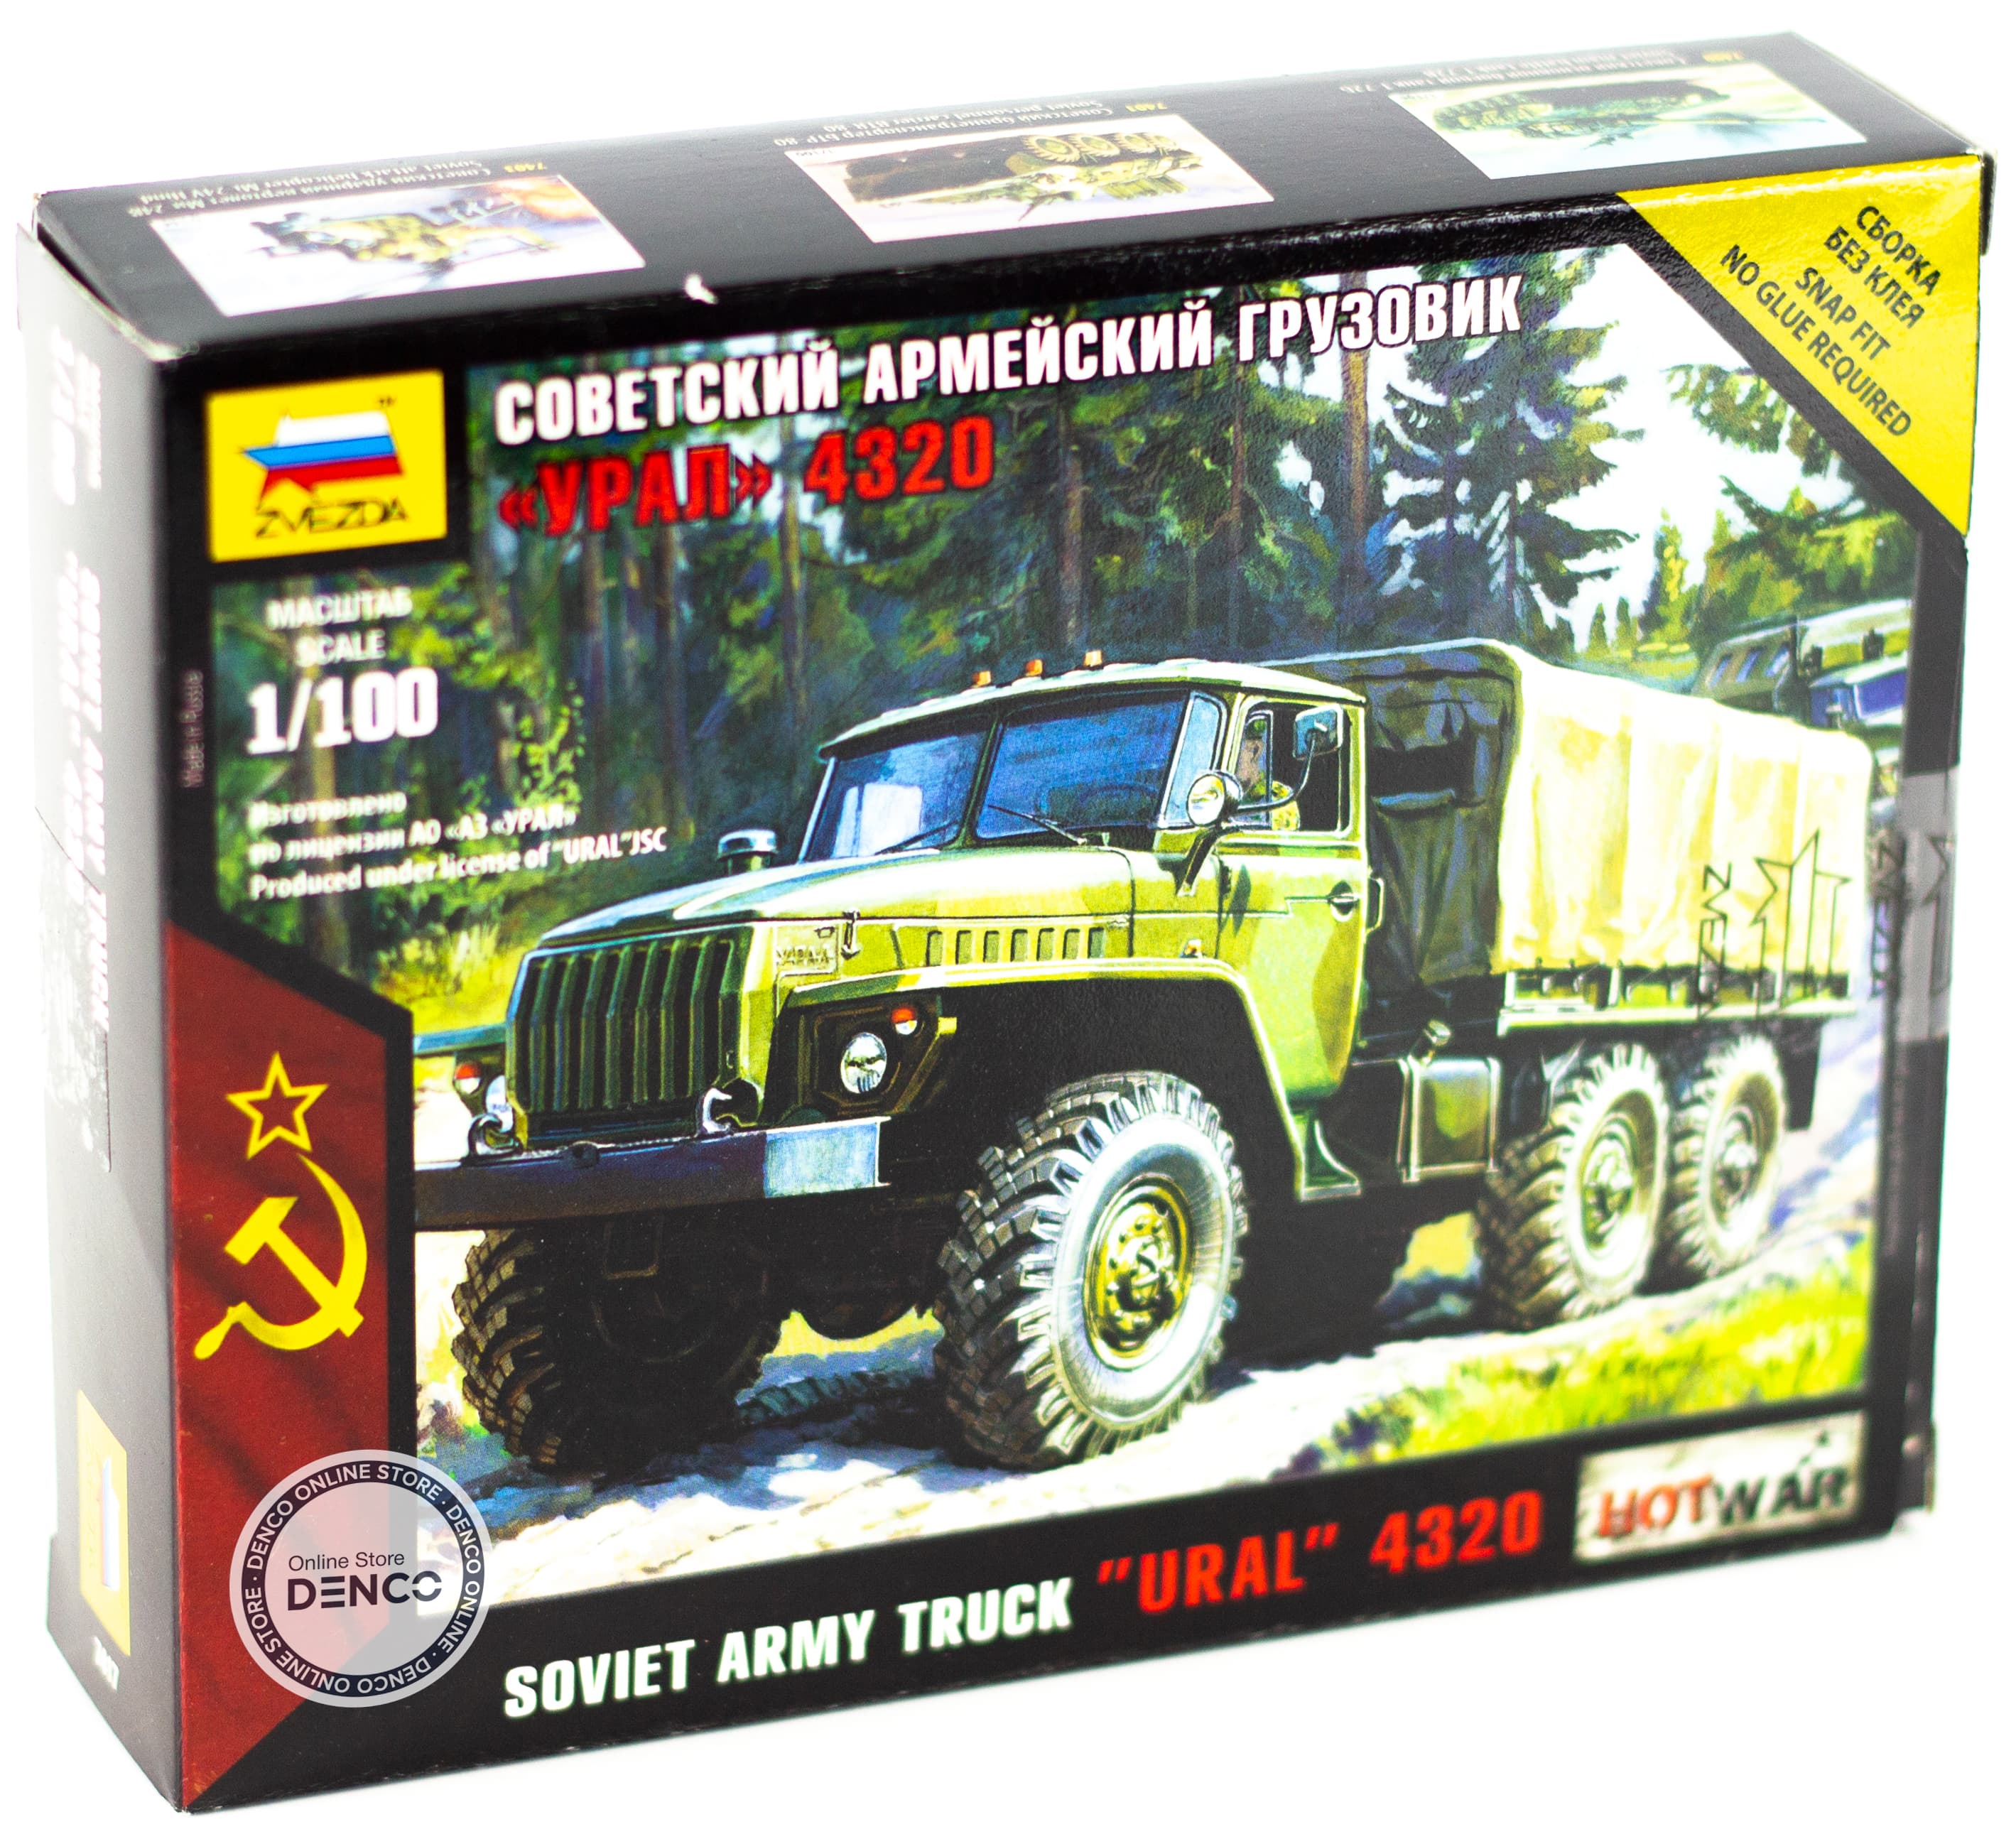 Сборная модель Zvezda 1:100 «Российский армейский грузовик Урал-4320» 7417, Art of Tactic Hot War